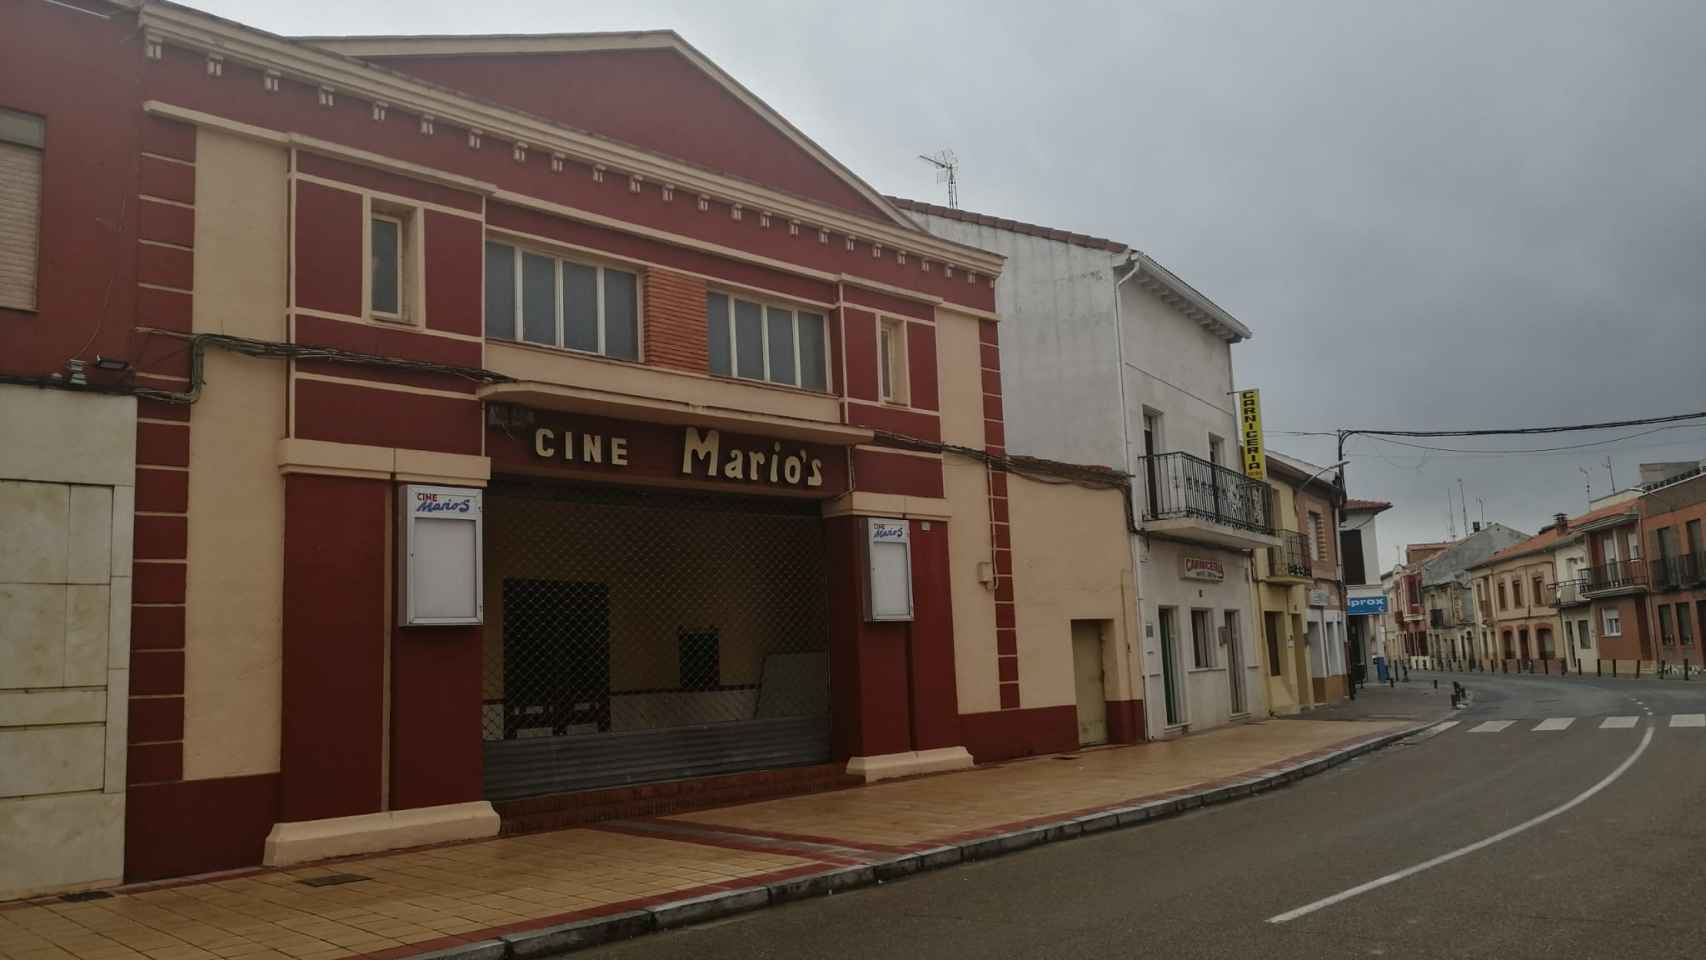 Cine Mario's en Quintanilla de Onésimo un día nublado